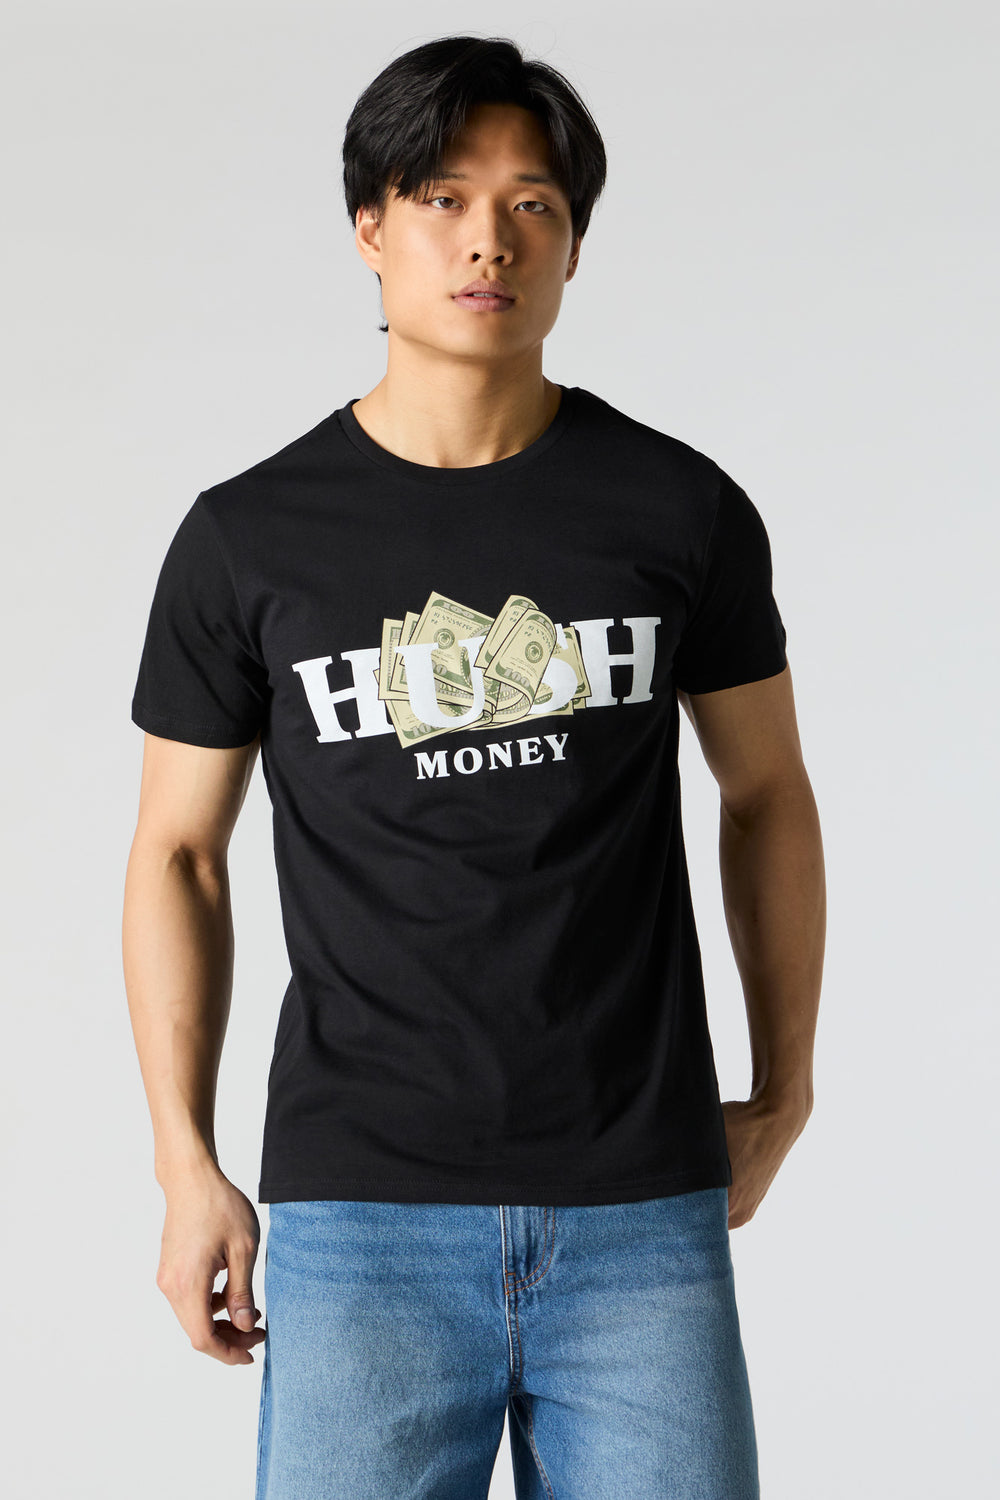 Hush Money Graphic T-Shirt Hush Money Graphic T-Shirt 2